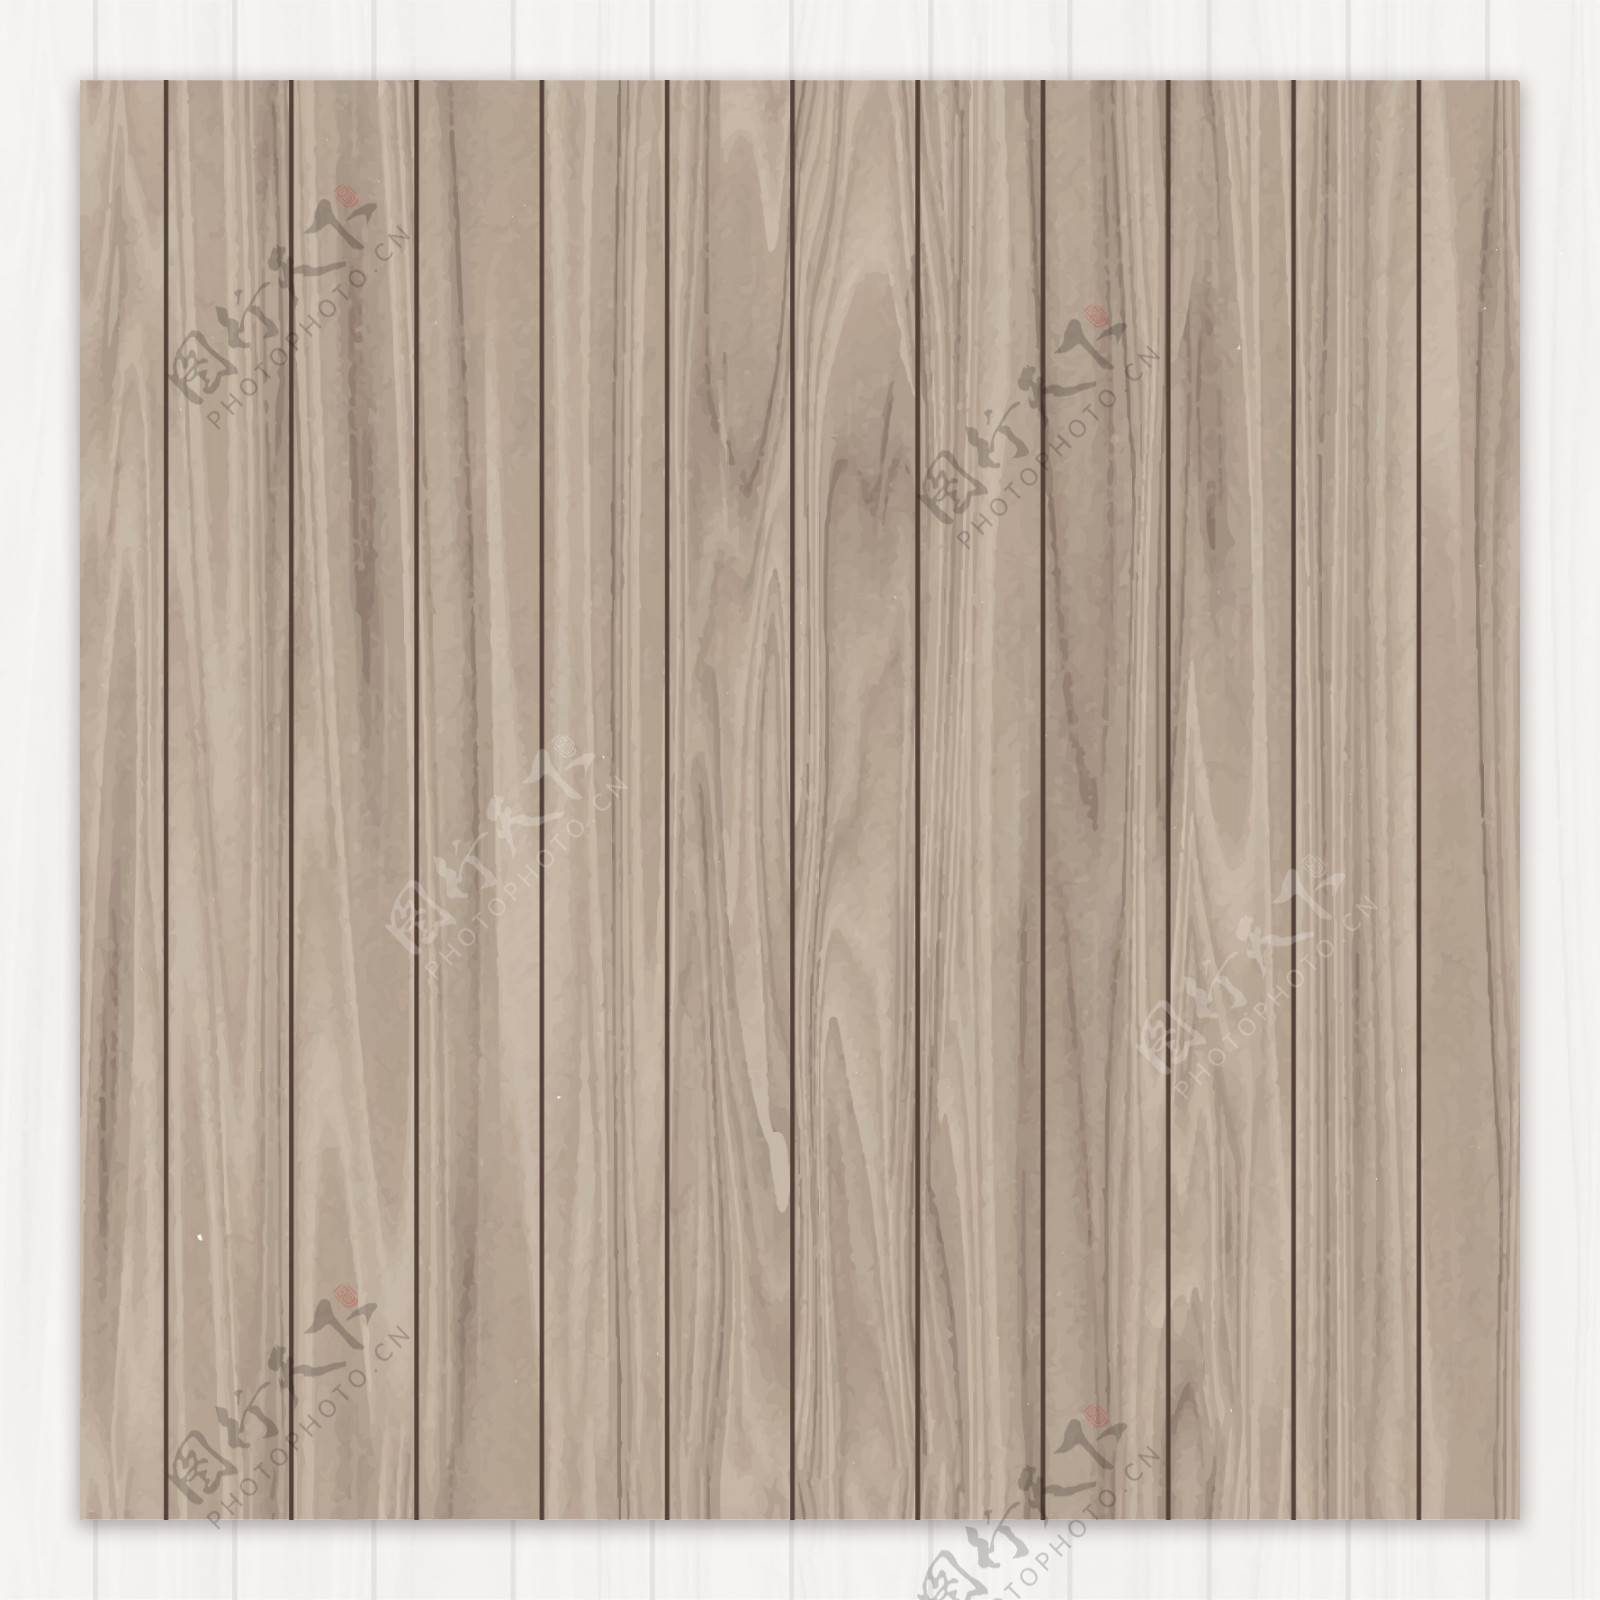 浅色木板拼接木纹背景